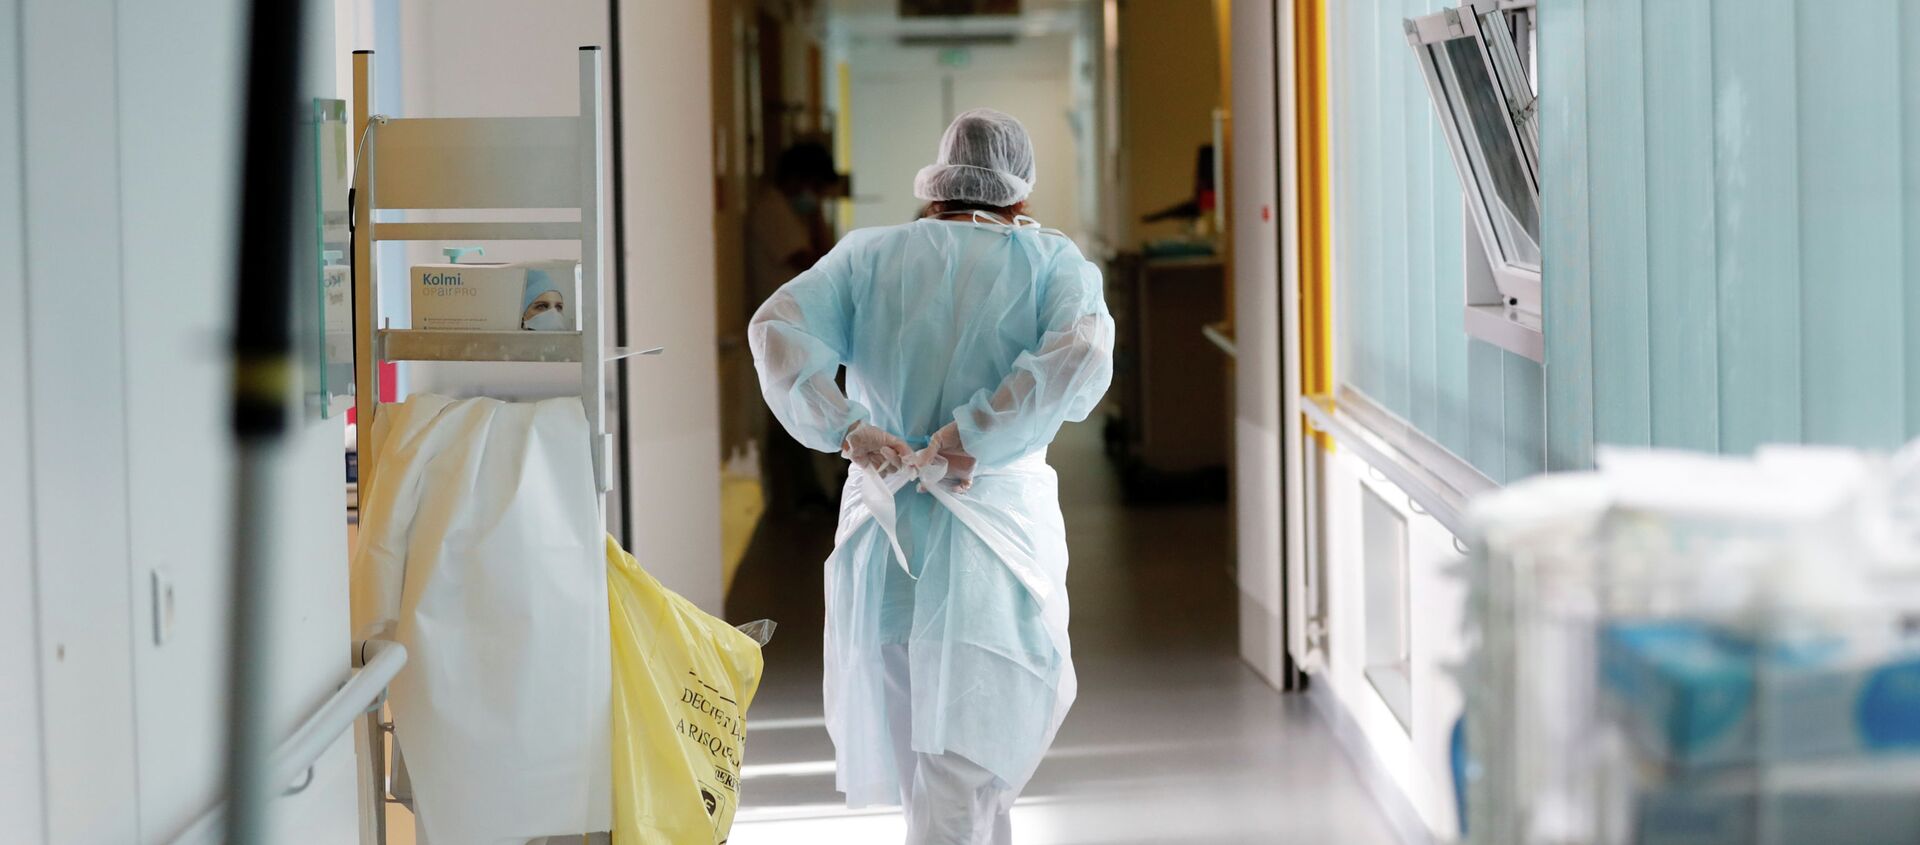 Врач надевает защитный костюм в коридоре больницы с коронавирусом  - Sputnik Қазақстан, 1920, 04.02.2021